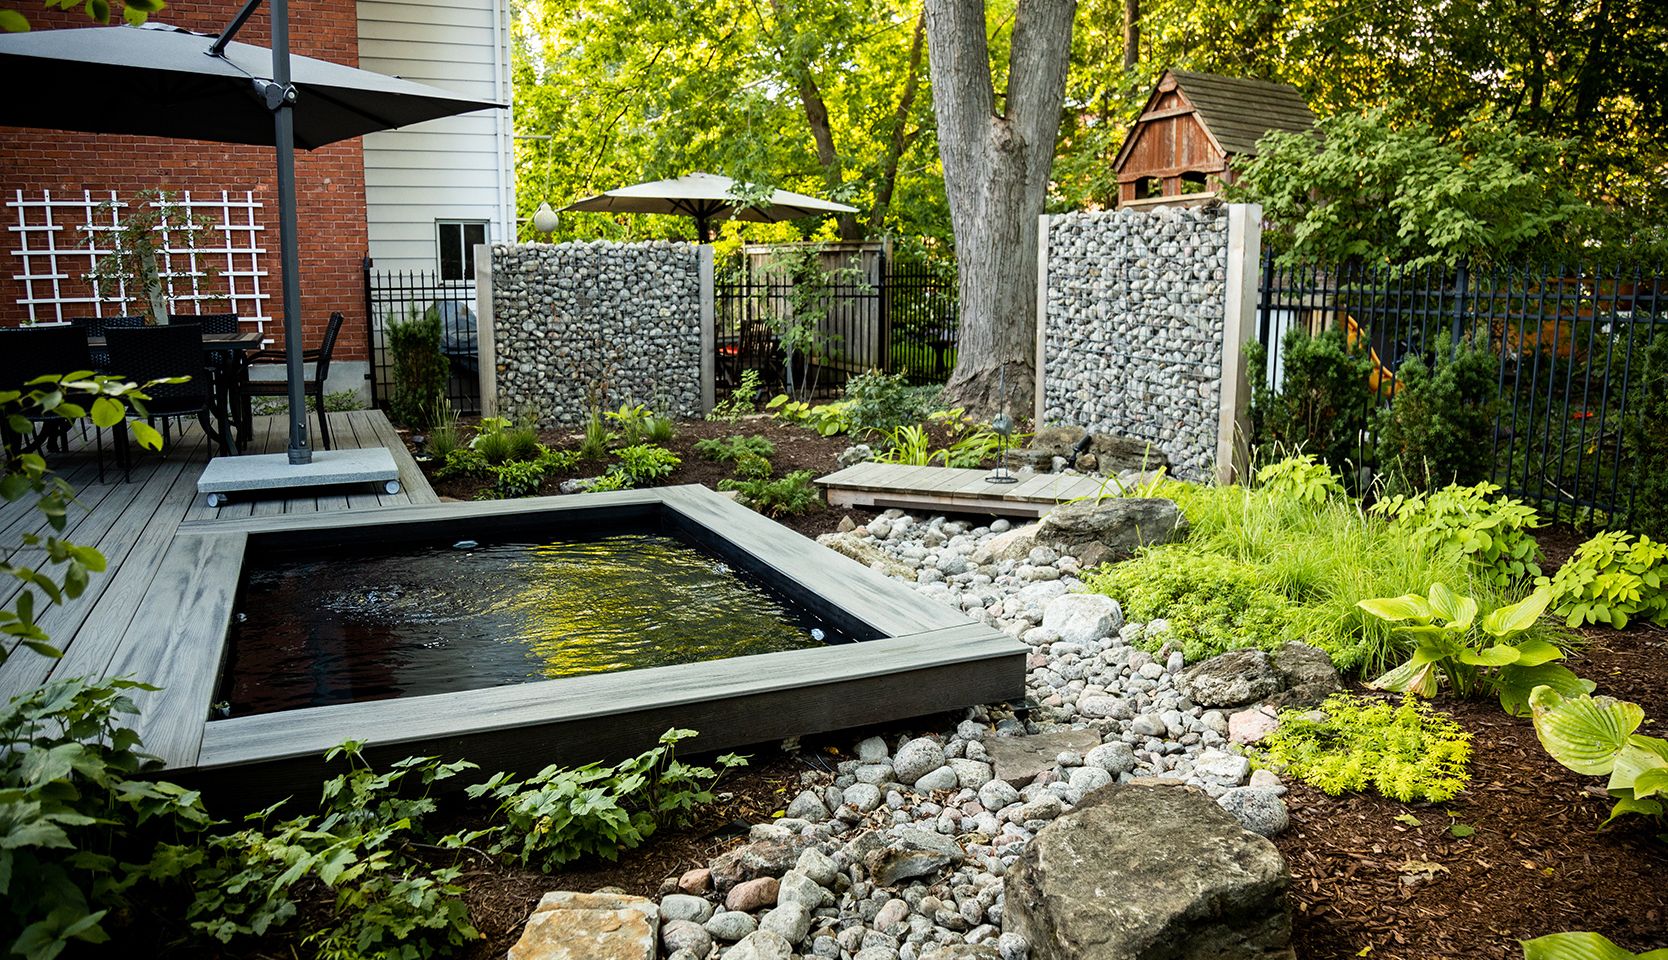 bain nordique dans jardin luxuriant entouré de pierres pour aménager un spa extérieur